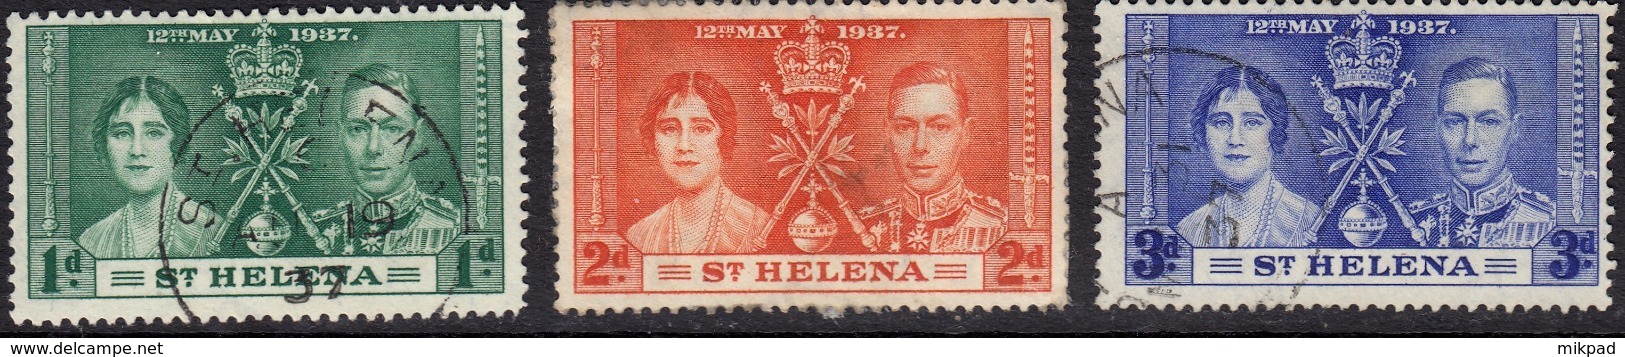 St Helena 1937 Coronation Set SG128-130 - Used - Saint Helena Island